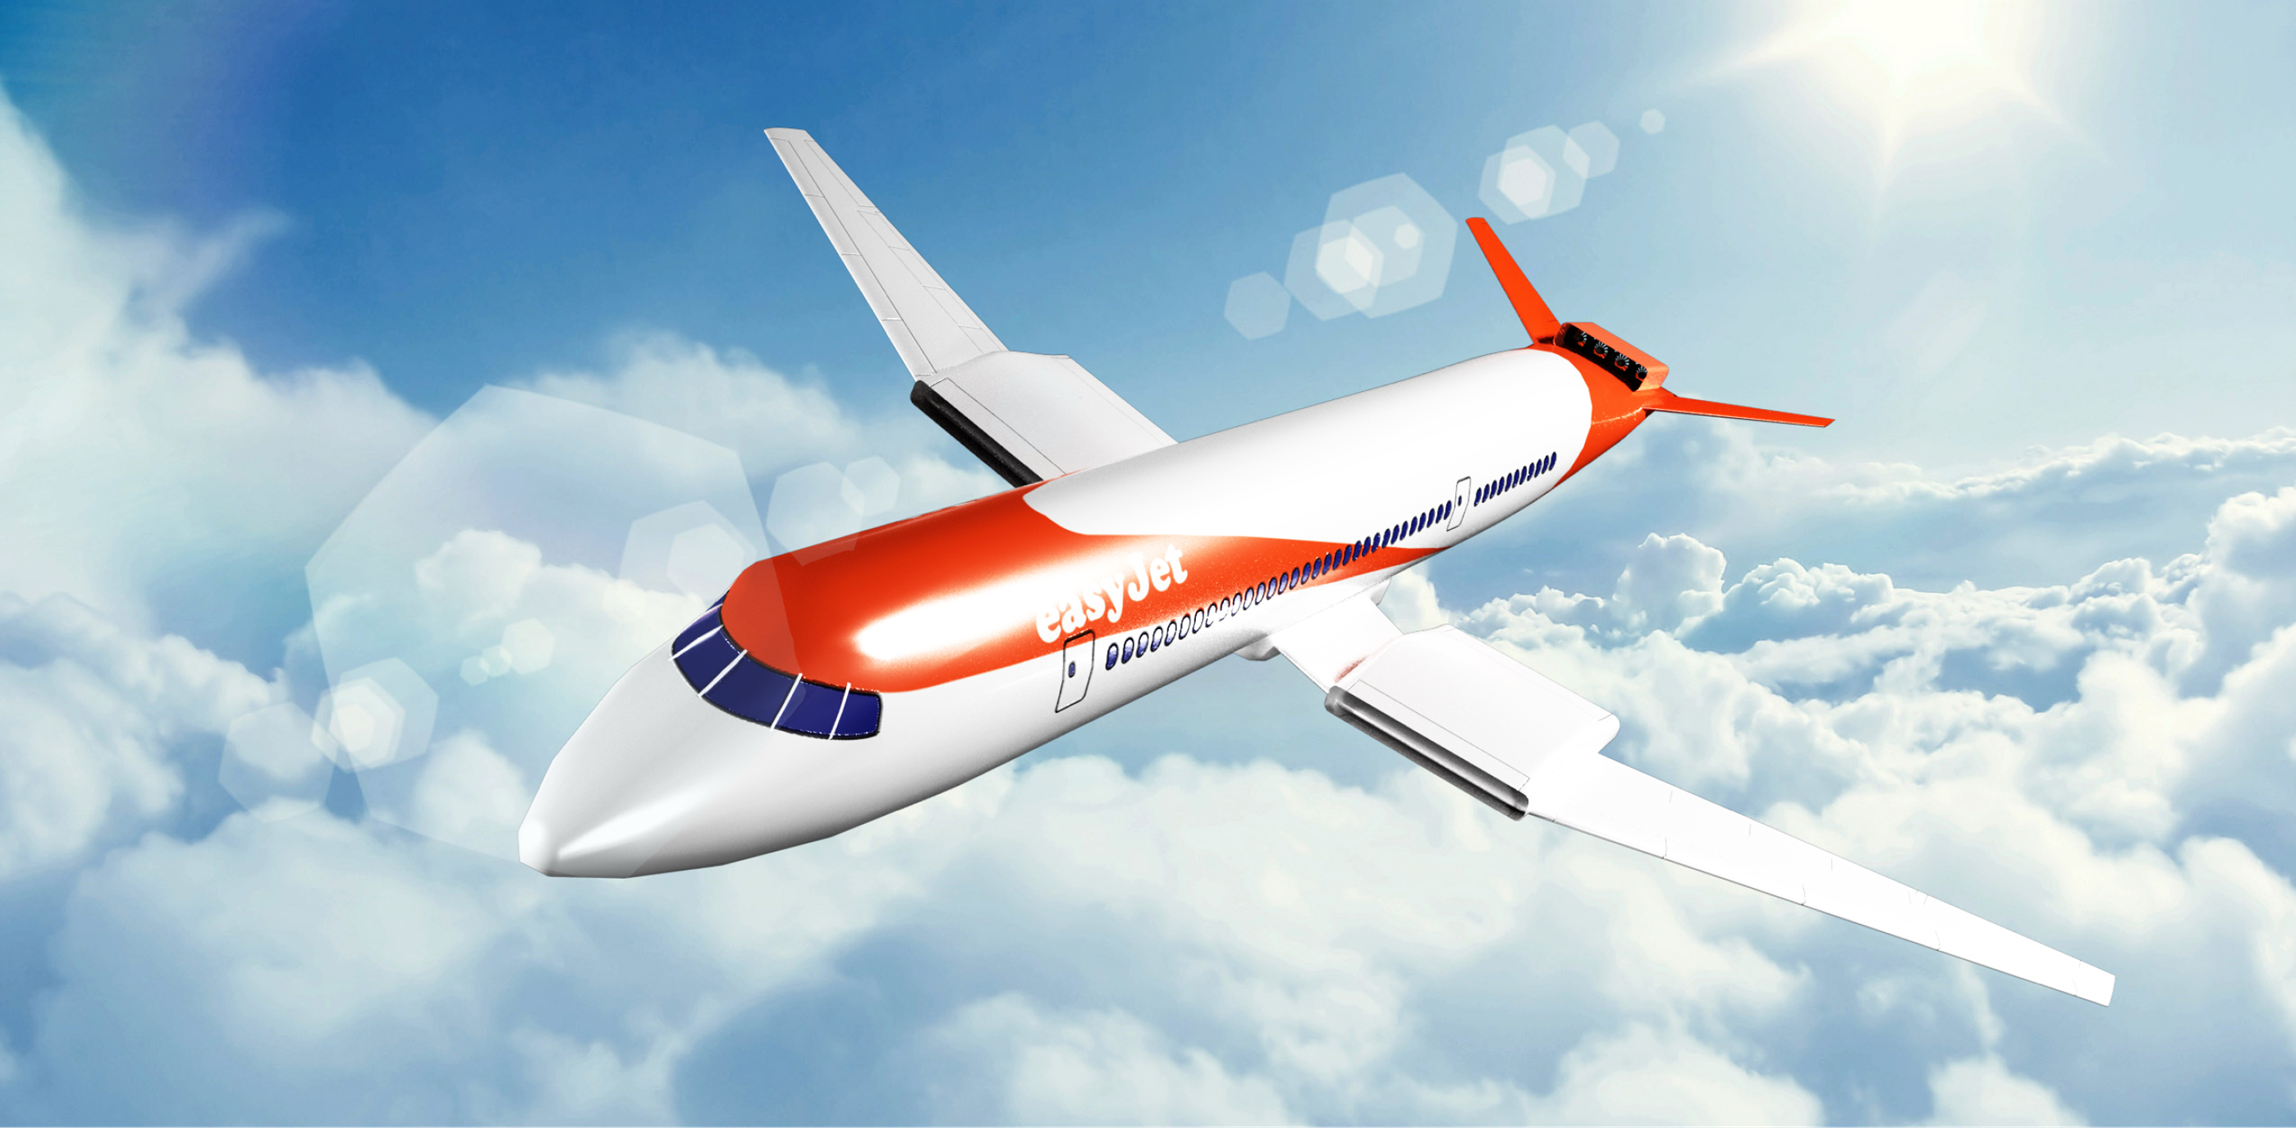 Avion zéro-émission : easyJet appelle à une collaboration entre les gouvernements et le secteur aéronautique